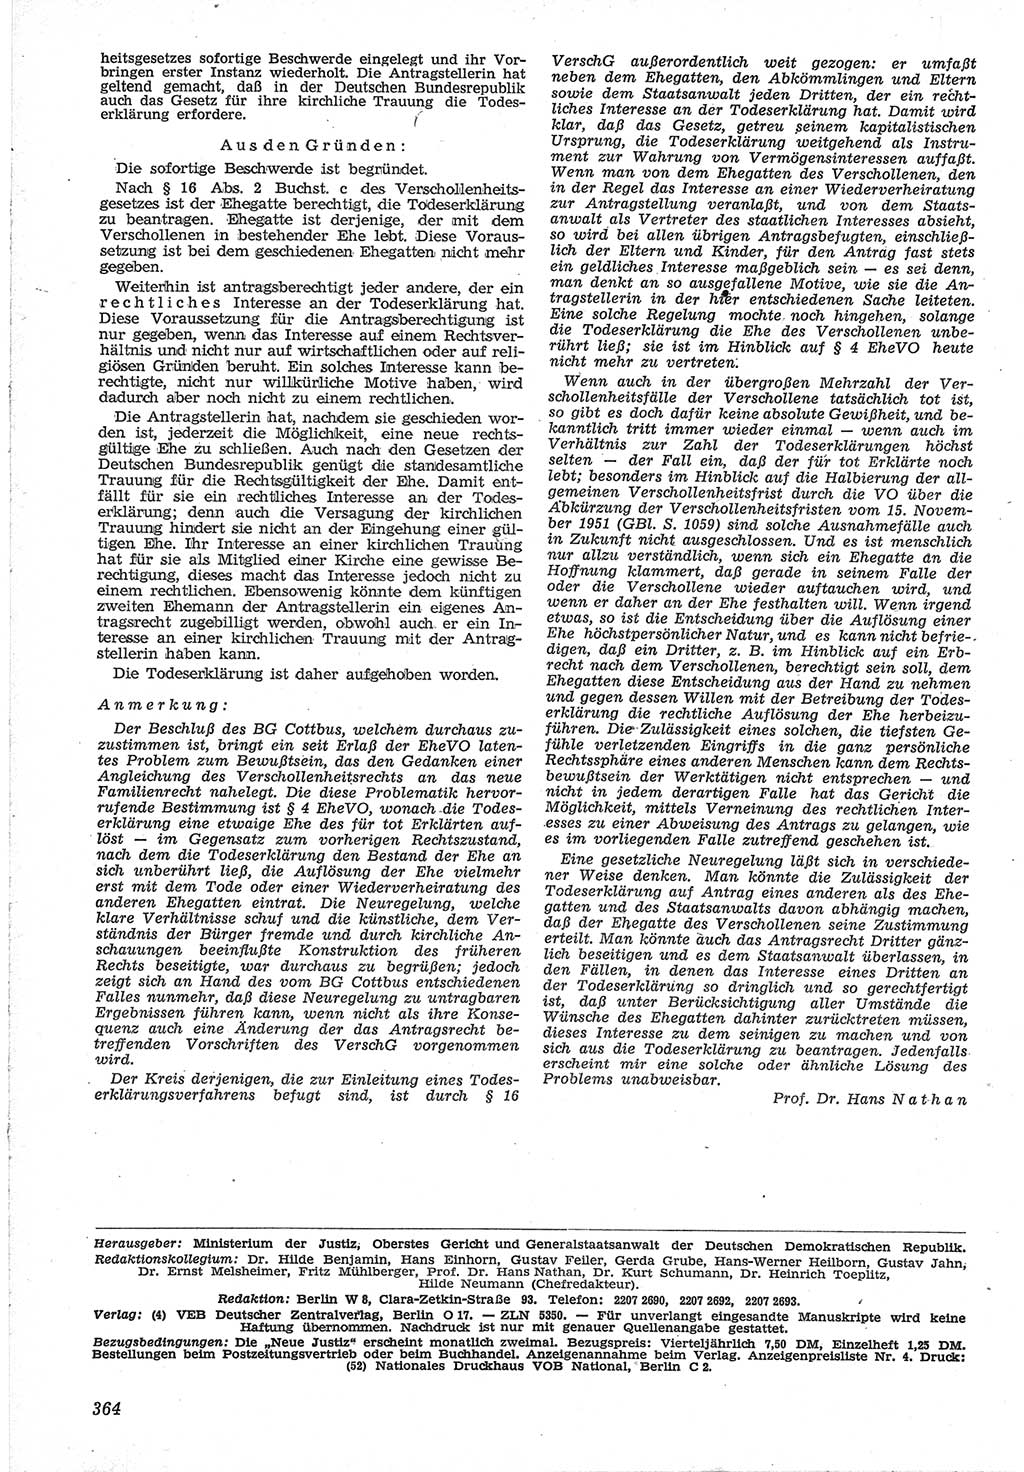 Neue Justiz (NJ), Zeitschrift für Recht und Rechtswissenschaft [Deutsche Demokratische Republik (DDR)], 12. Jahrgang 1958, Seite 364 (NJ DDR 1958, S. 364)